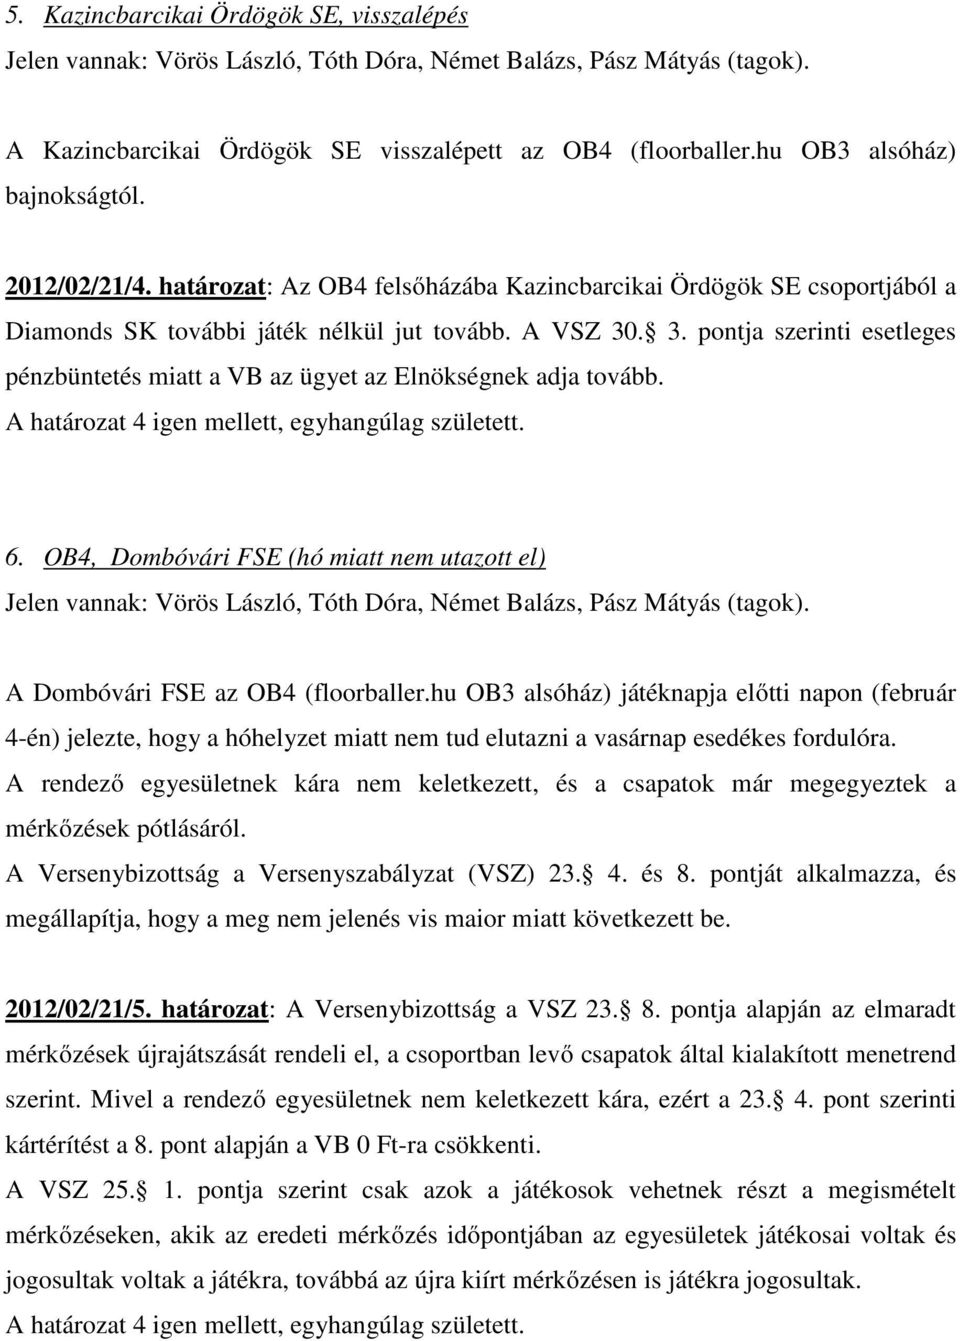 . 3. pontja szerinti esetleges pénzbüntetés miatt a VB az ügyet az Elnökségnek adja tovább. 6. OB4, Dombóvári FSE (hó miatt nem utazott el) A Dombóvári FSE az OB4 (floorballer.